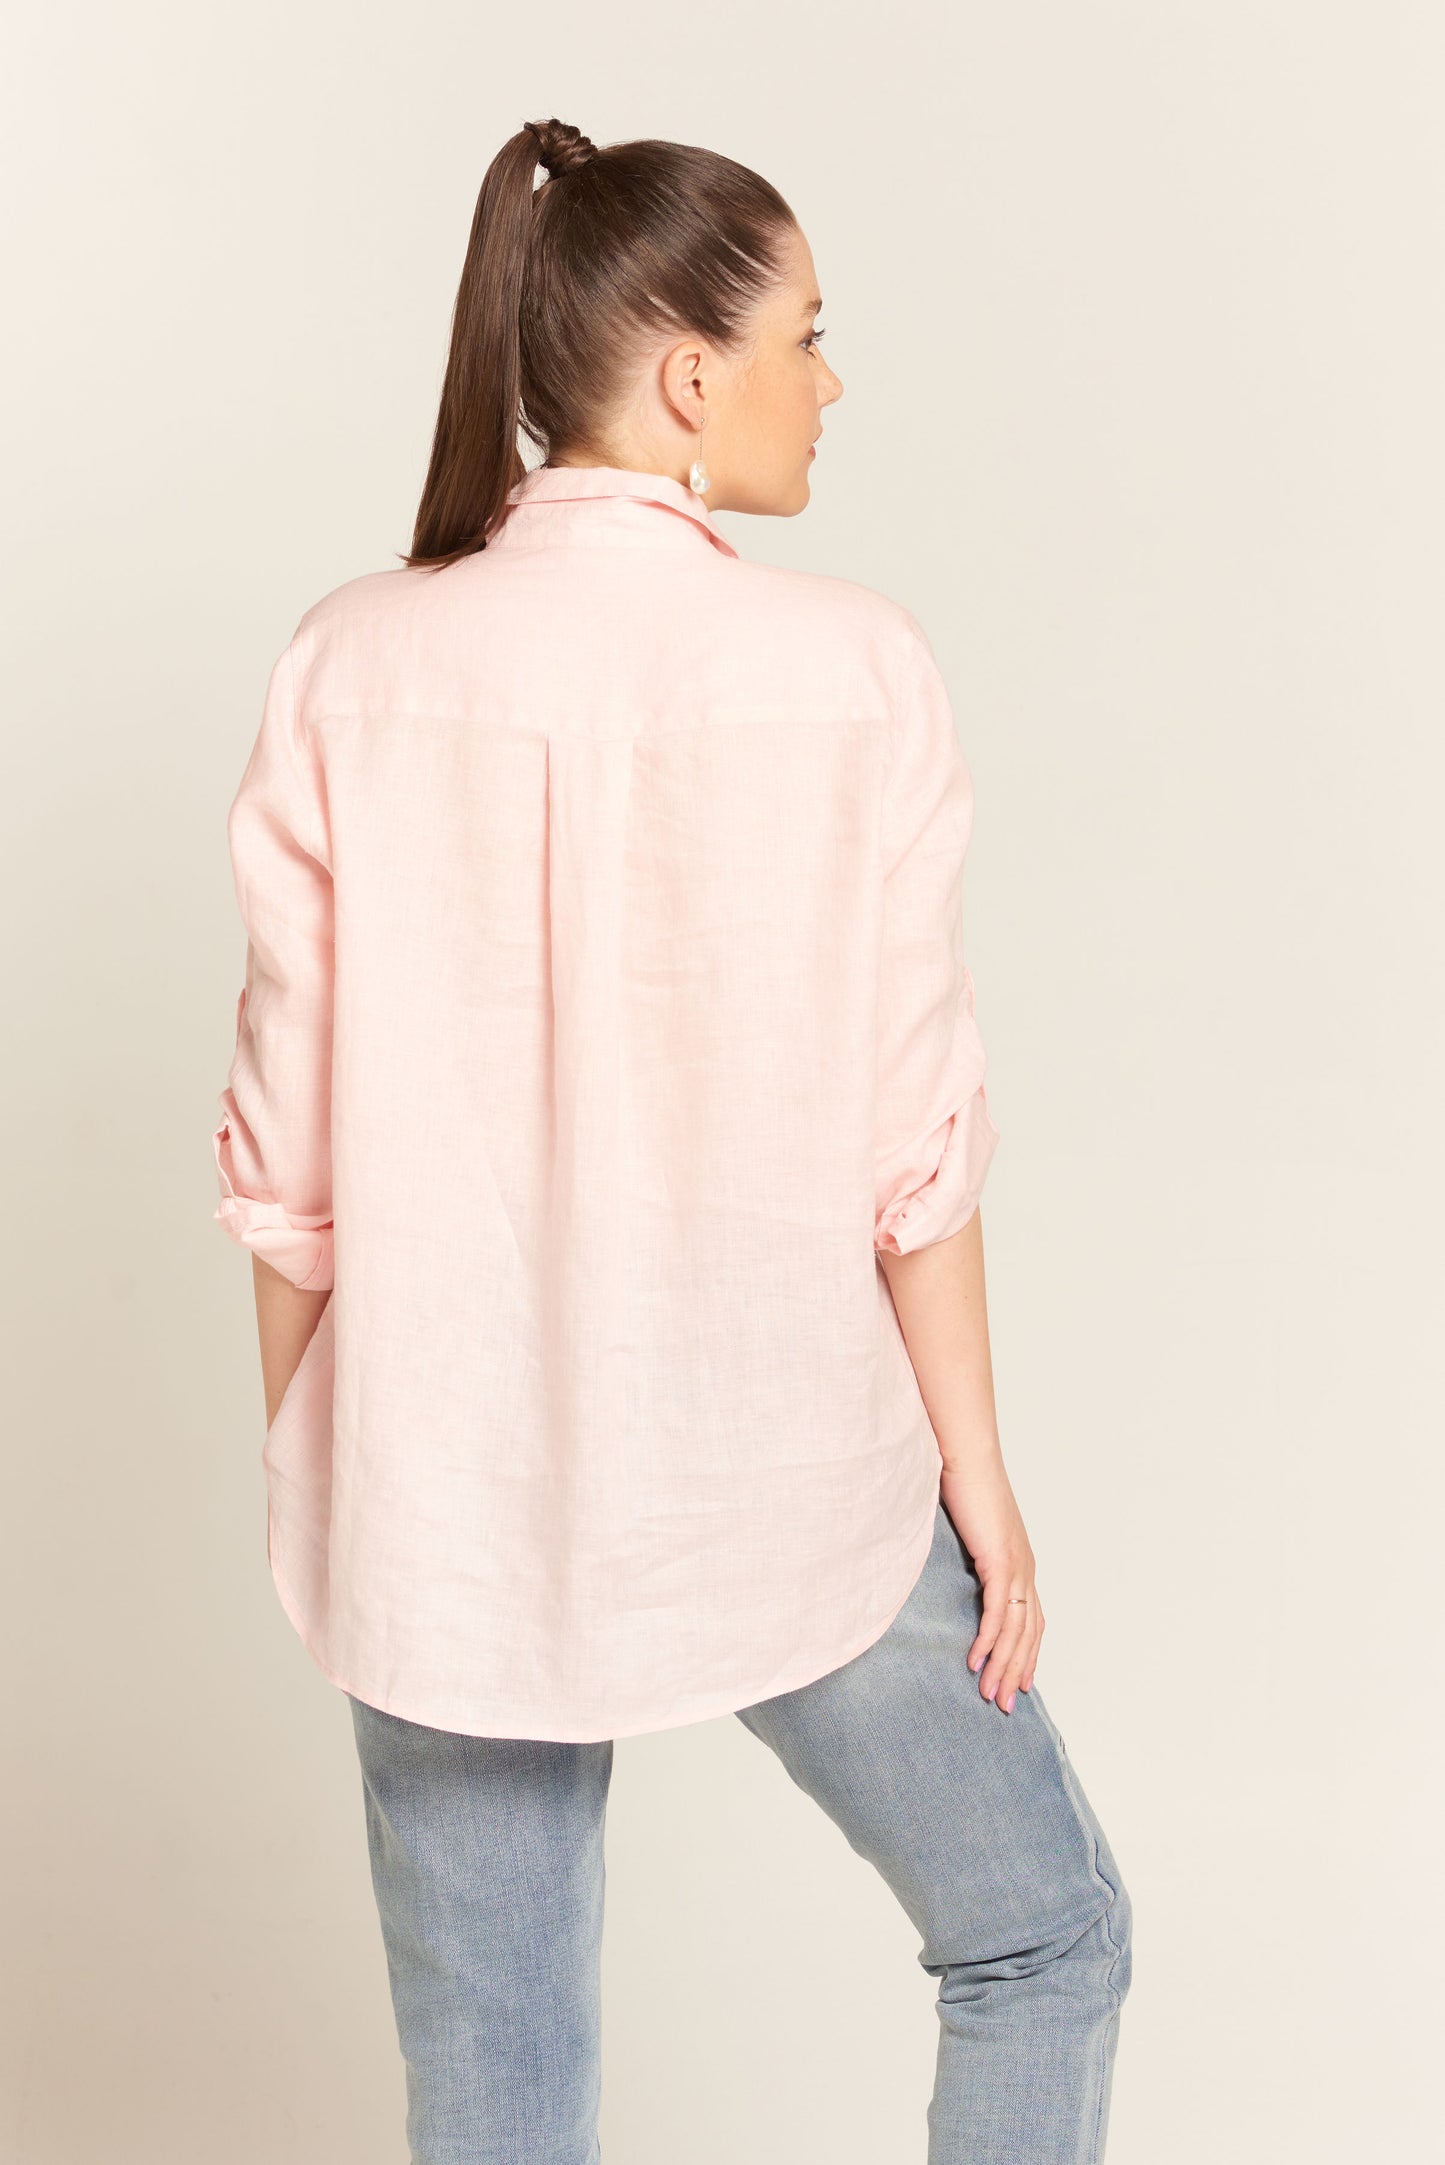 Cloth Paper Scissors Long Sleeve Linen Shirt Soft Pink | CPS1401